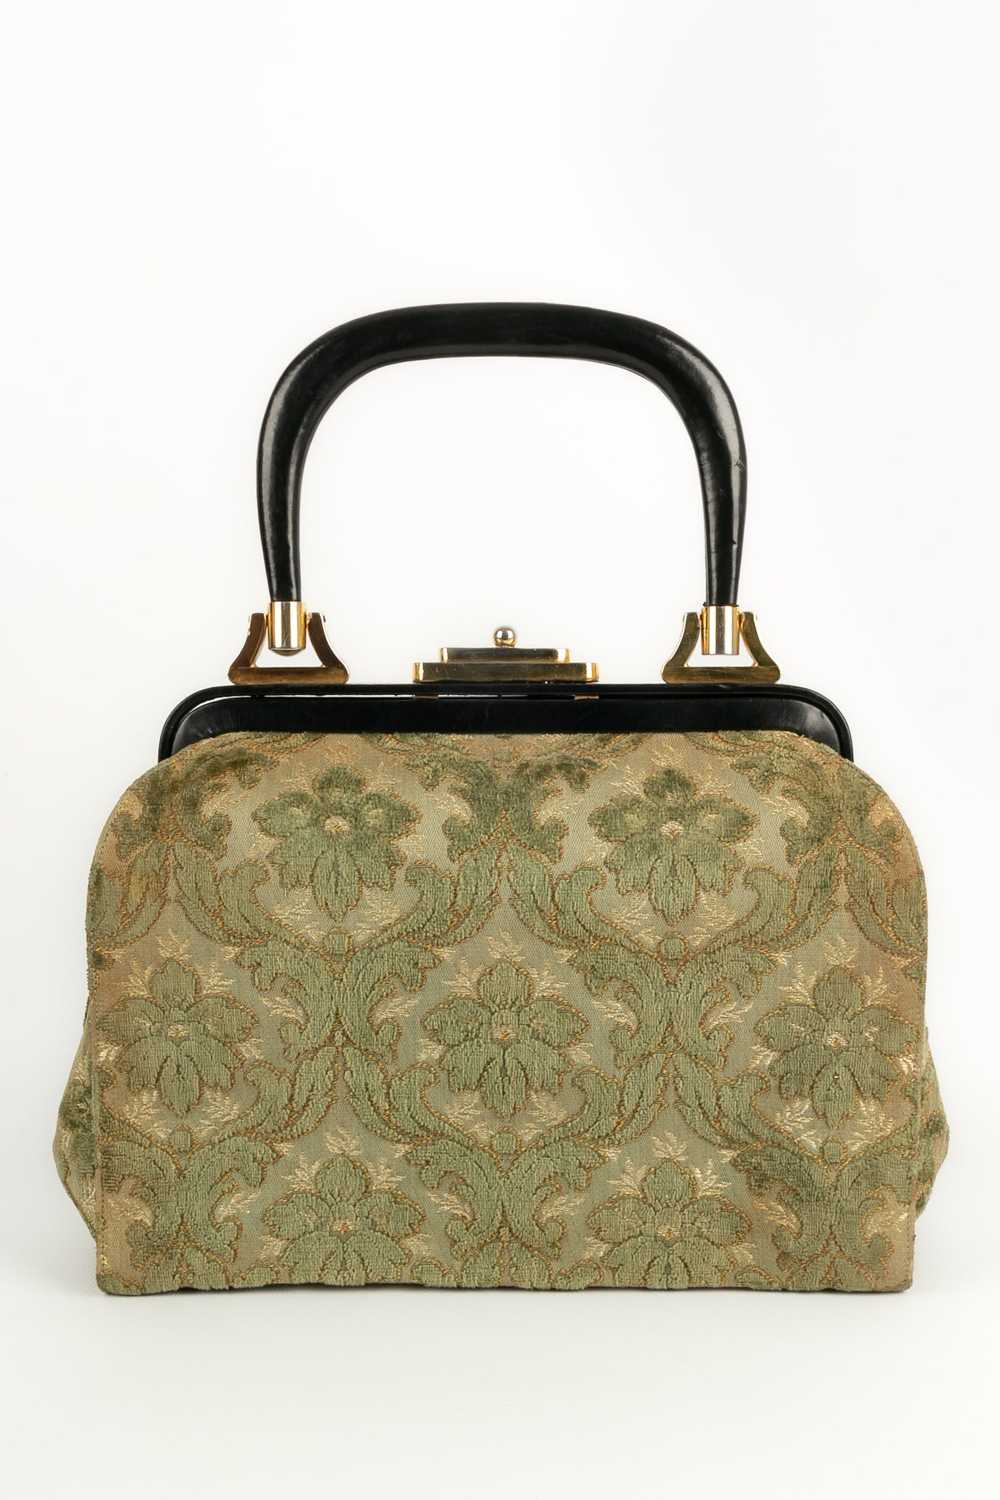 Velvet handbag - image 2